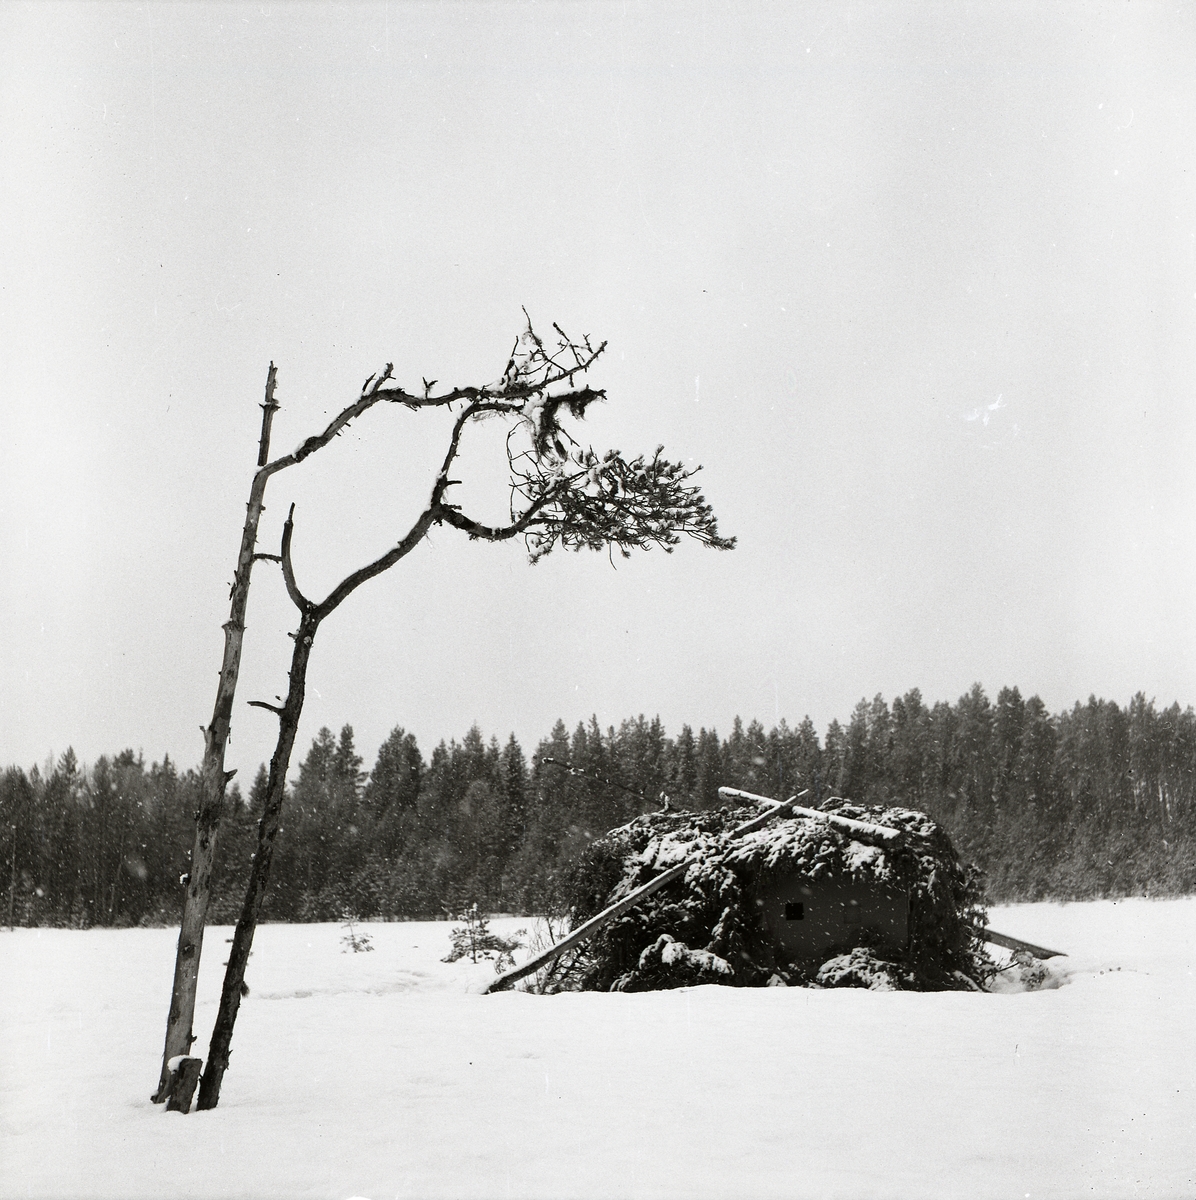 I förgrunden står två kala träd ensamma på ett fält med endast några få barr kvar på sina grenar. Bakom träden finns en översnöad koja täckt av granris. Det snöiga fältet sträcker sig långt bakom kojan till skogens rand.